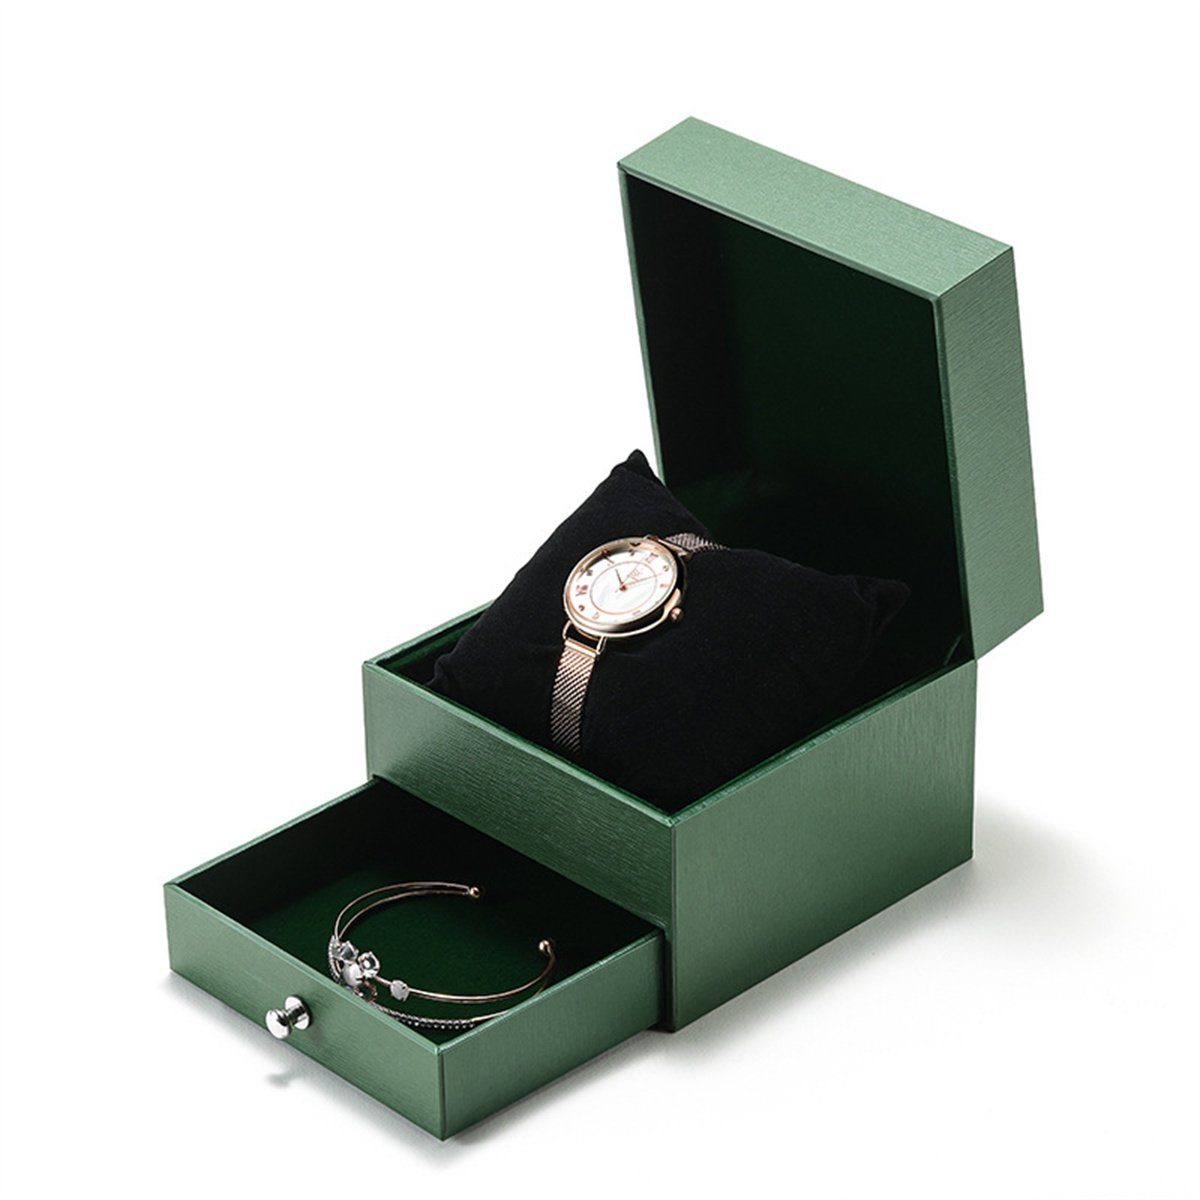 schönes Geschenk Armband) selected carefully Damen-Quarzuhr-Geschenkbox-Set Quarzuhr (mit als